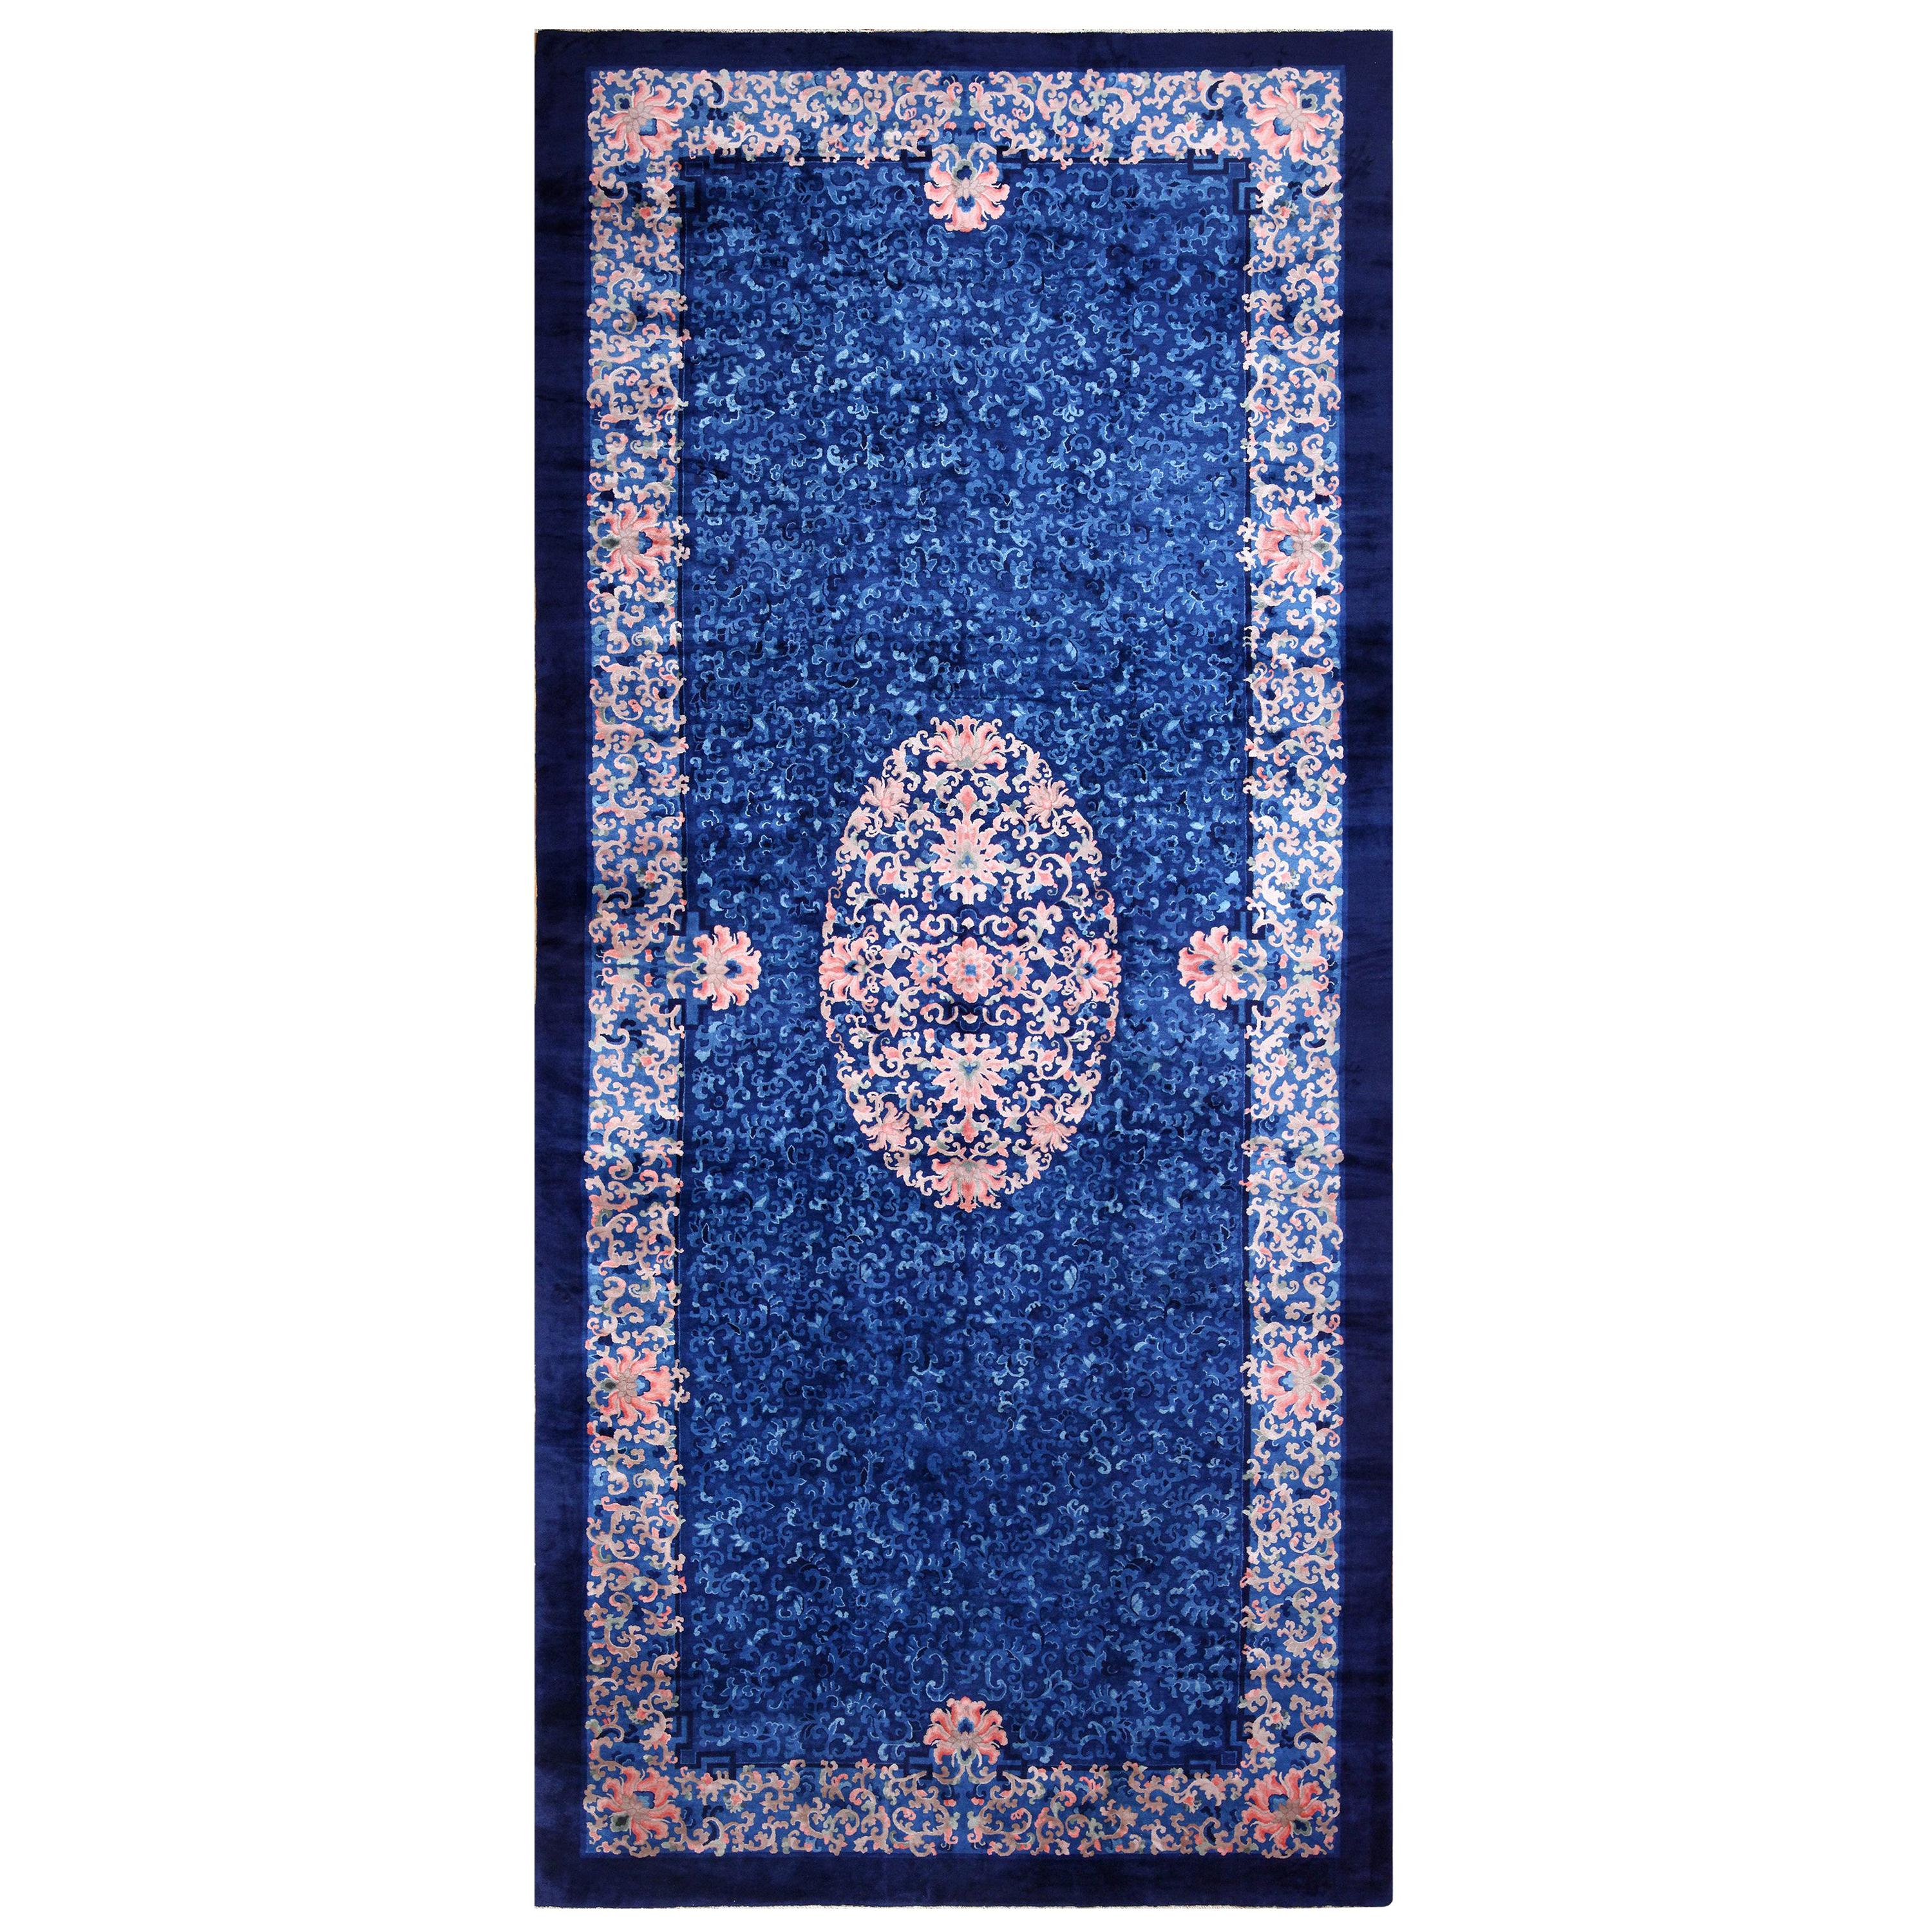 Antiker blauer chinesischer Teppich. Größe: 11 ft 1 in x 24 ft 6 in 